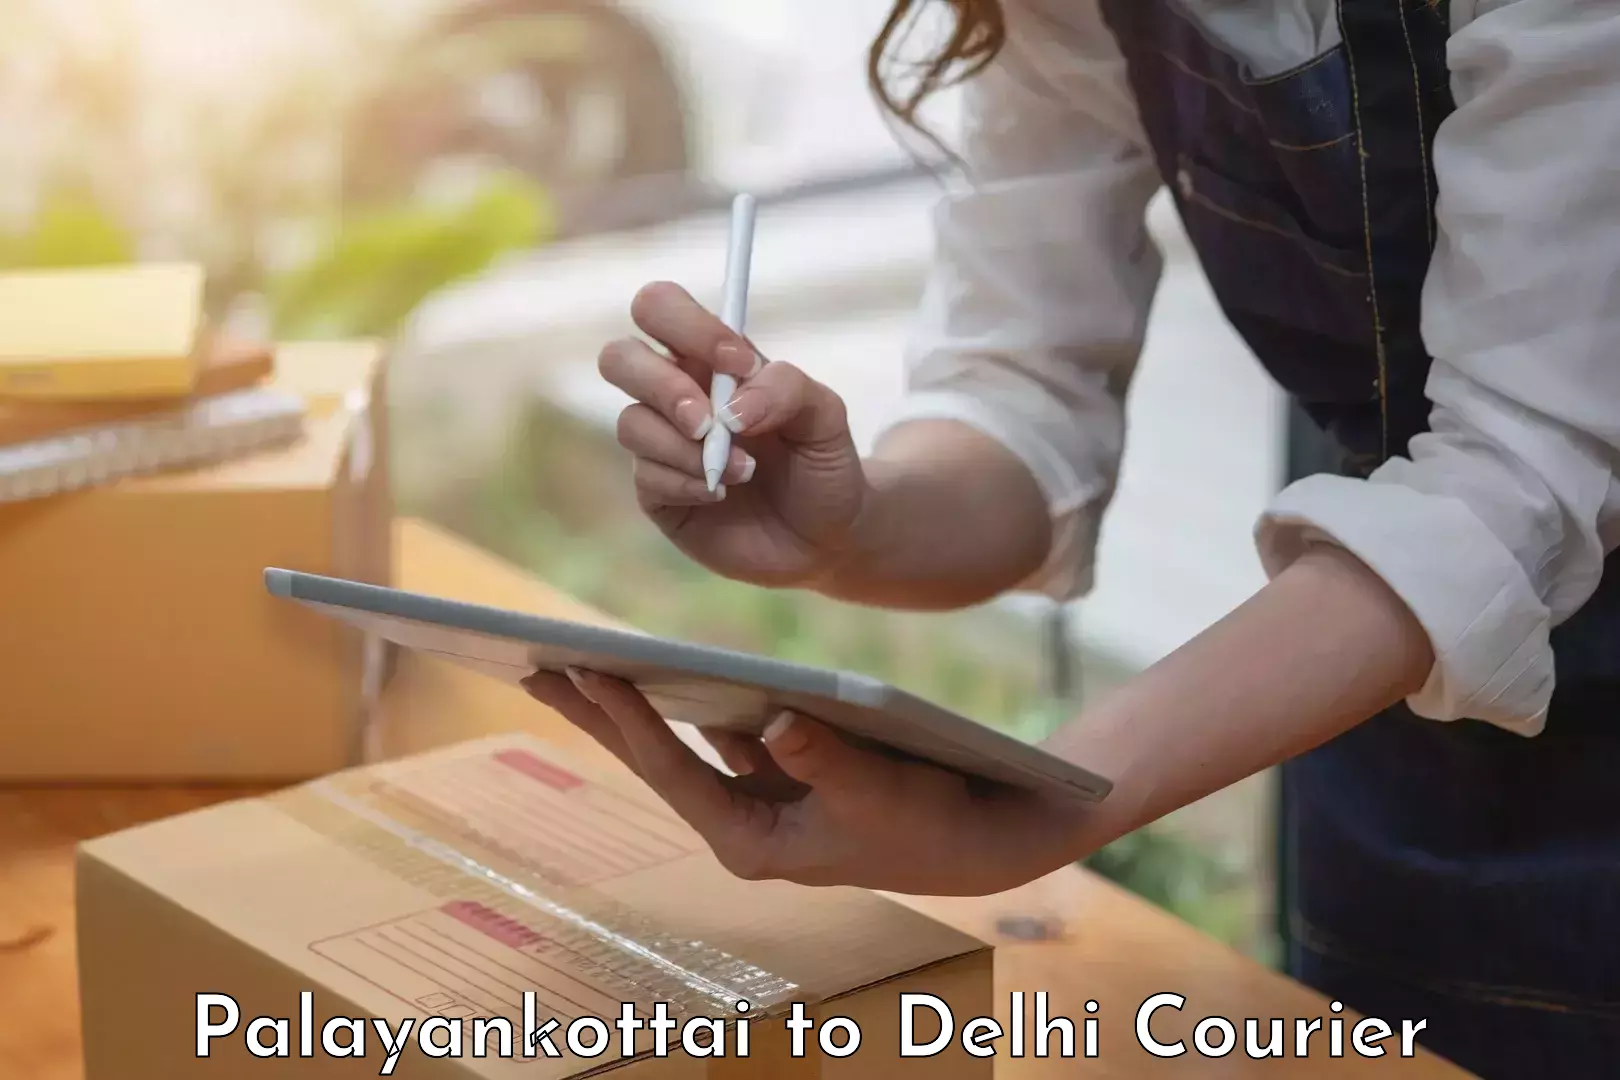 High-quality moving services Palayankottai to Jamia Millia Islamia New Delhi